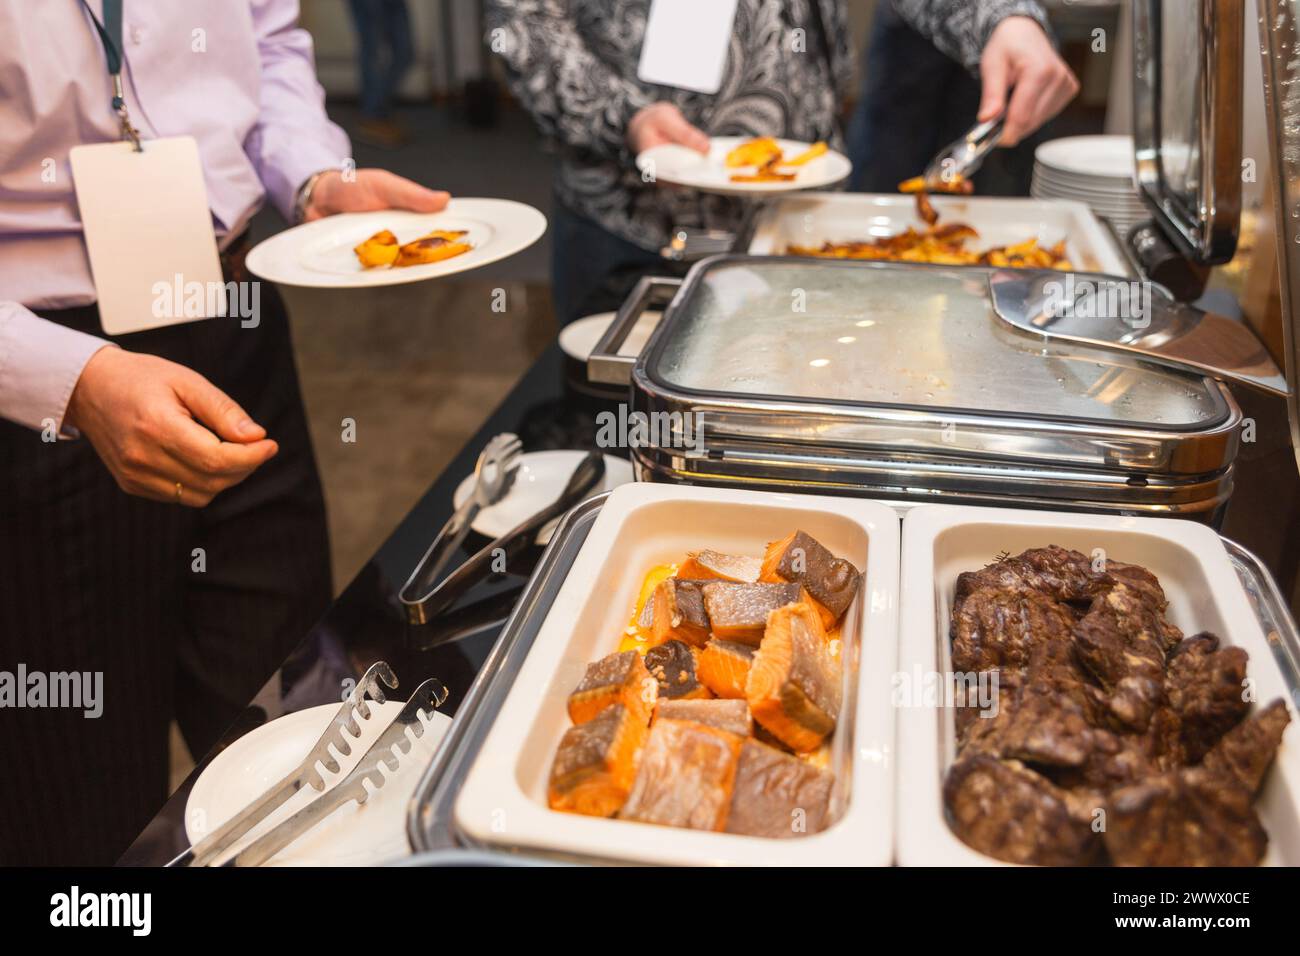 Les participants au séminaire d’affaires choisissent leur nourriture pendant leur pause déjeuner dans un restaurant buffet en libre-service Banque D'Images